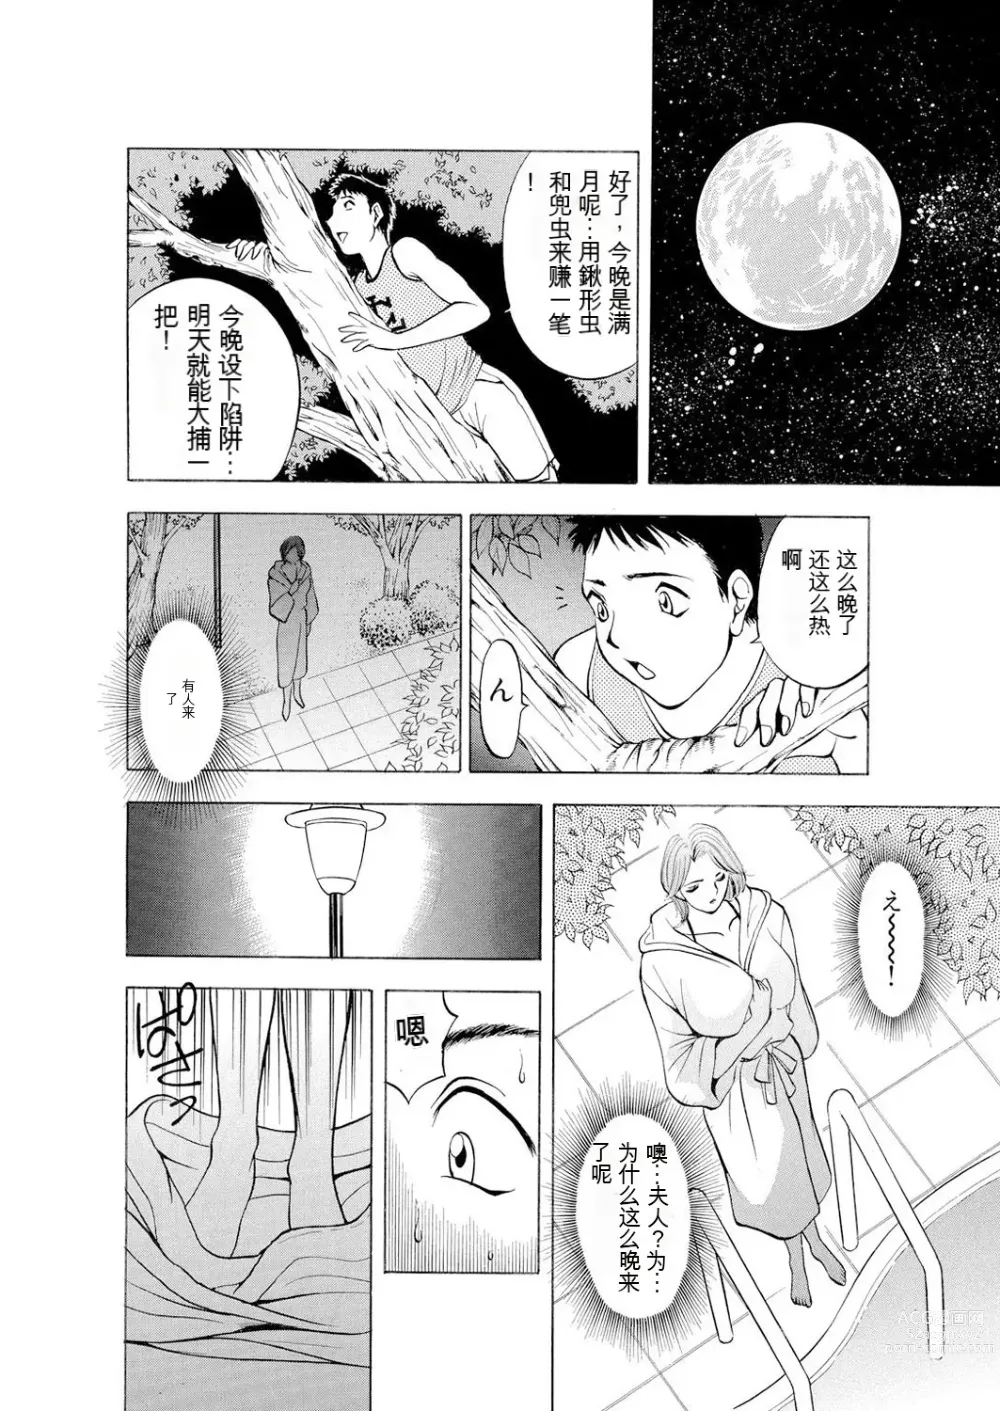 Page 6 of manga Netorare